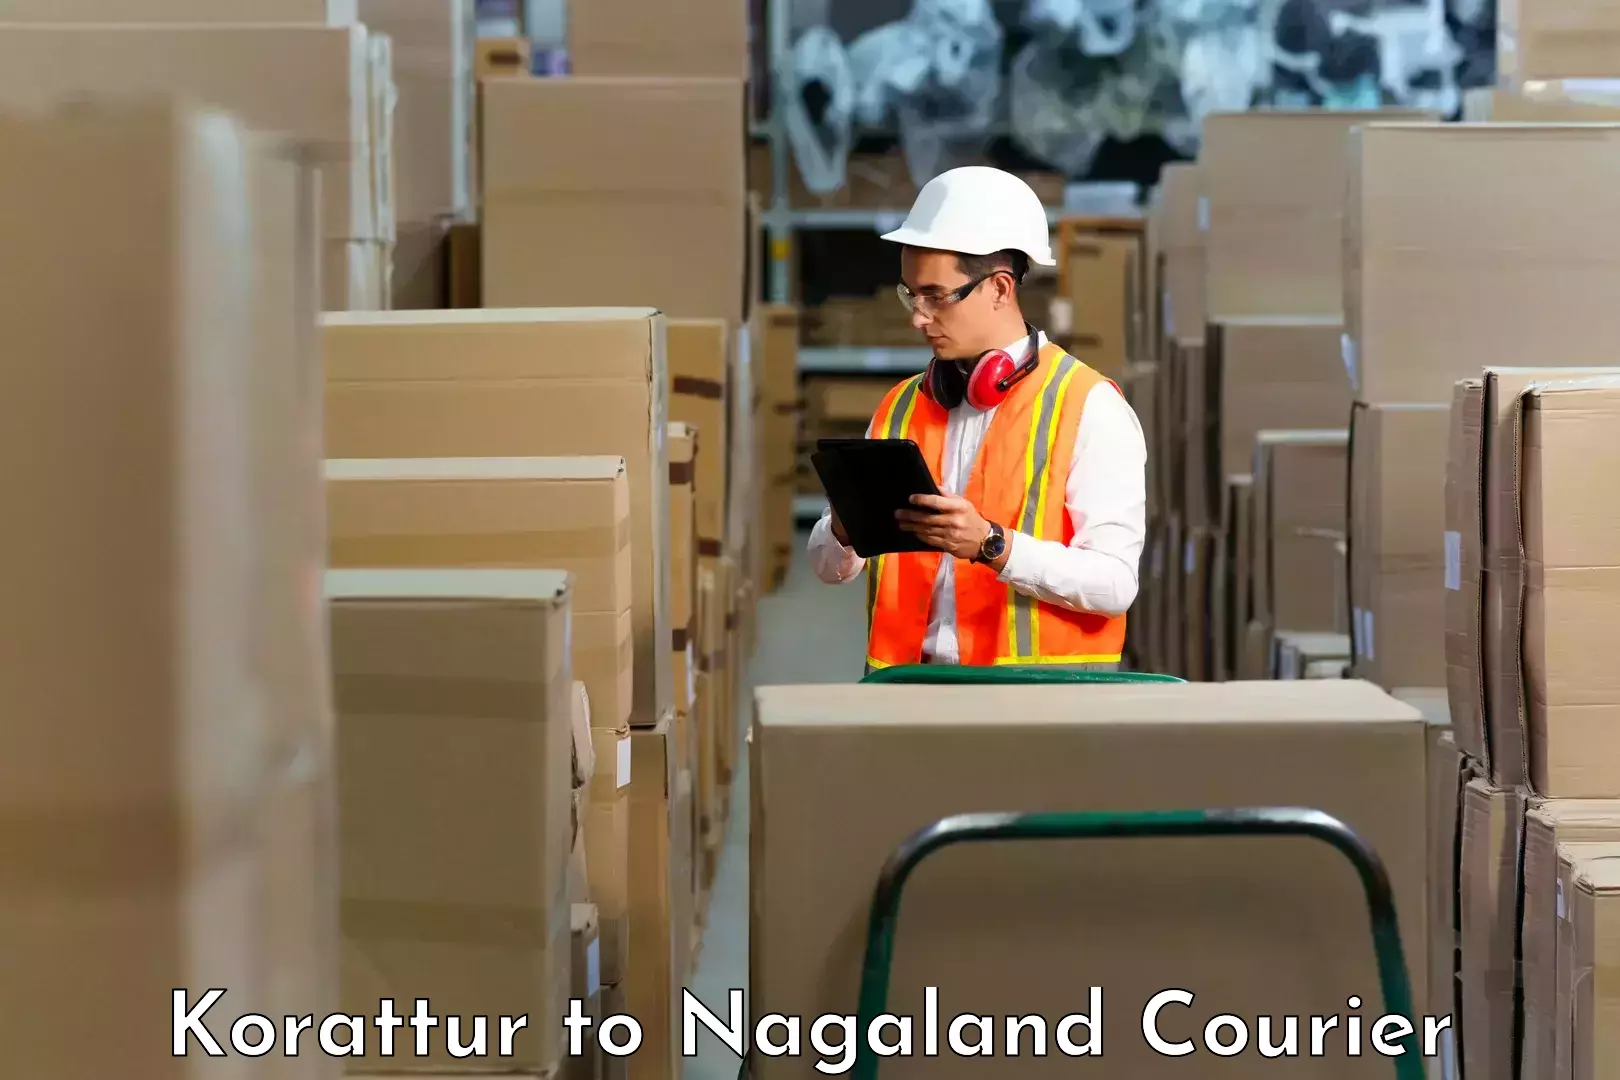 Modern delivery methods Korattur to Nagaland